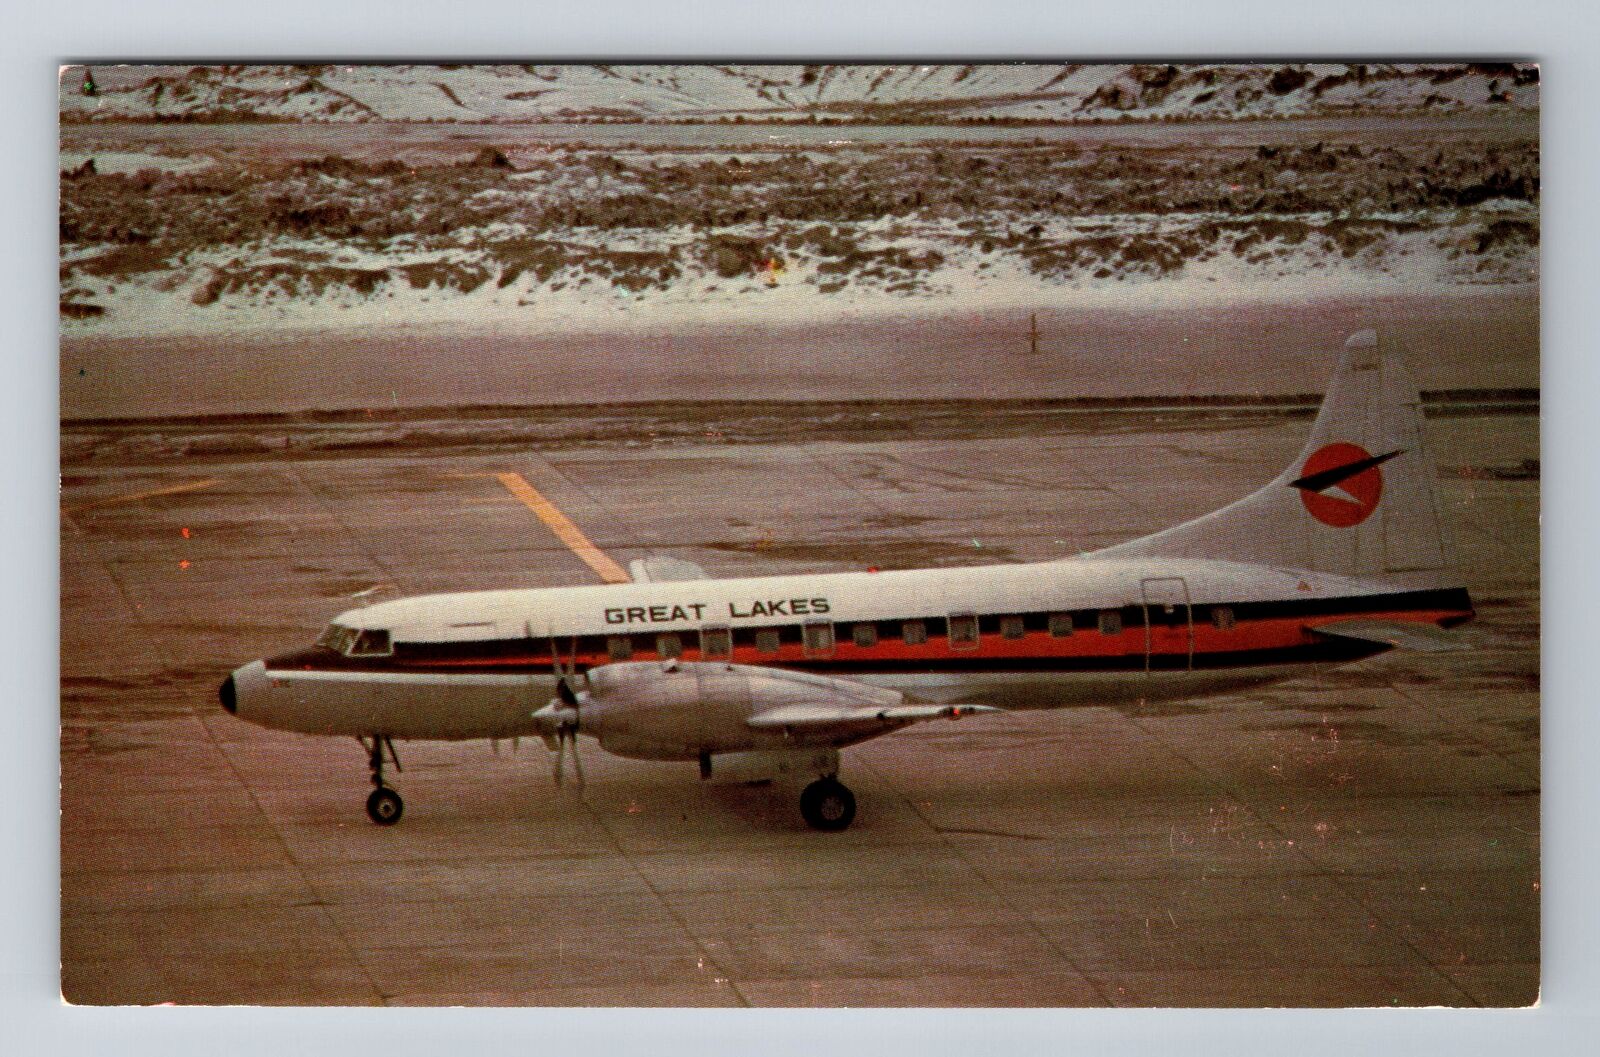 Great Lakes Air Convair CV-580, Plane, Transportation Antique Vintage Postcard